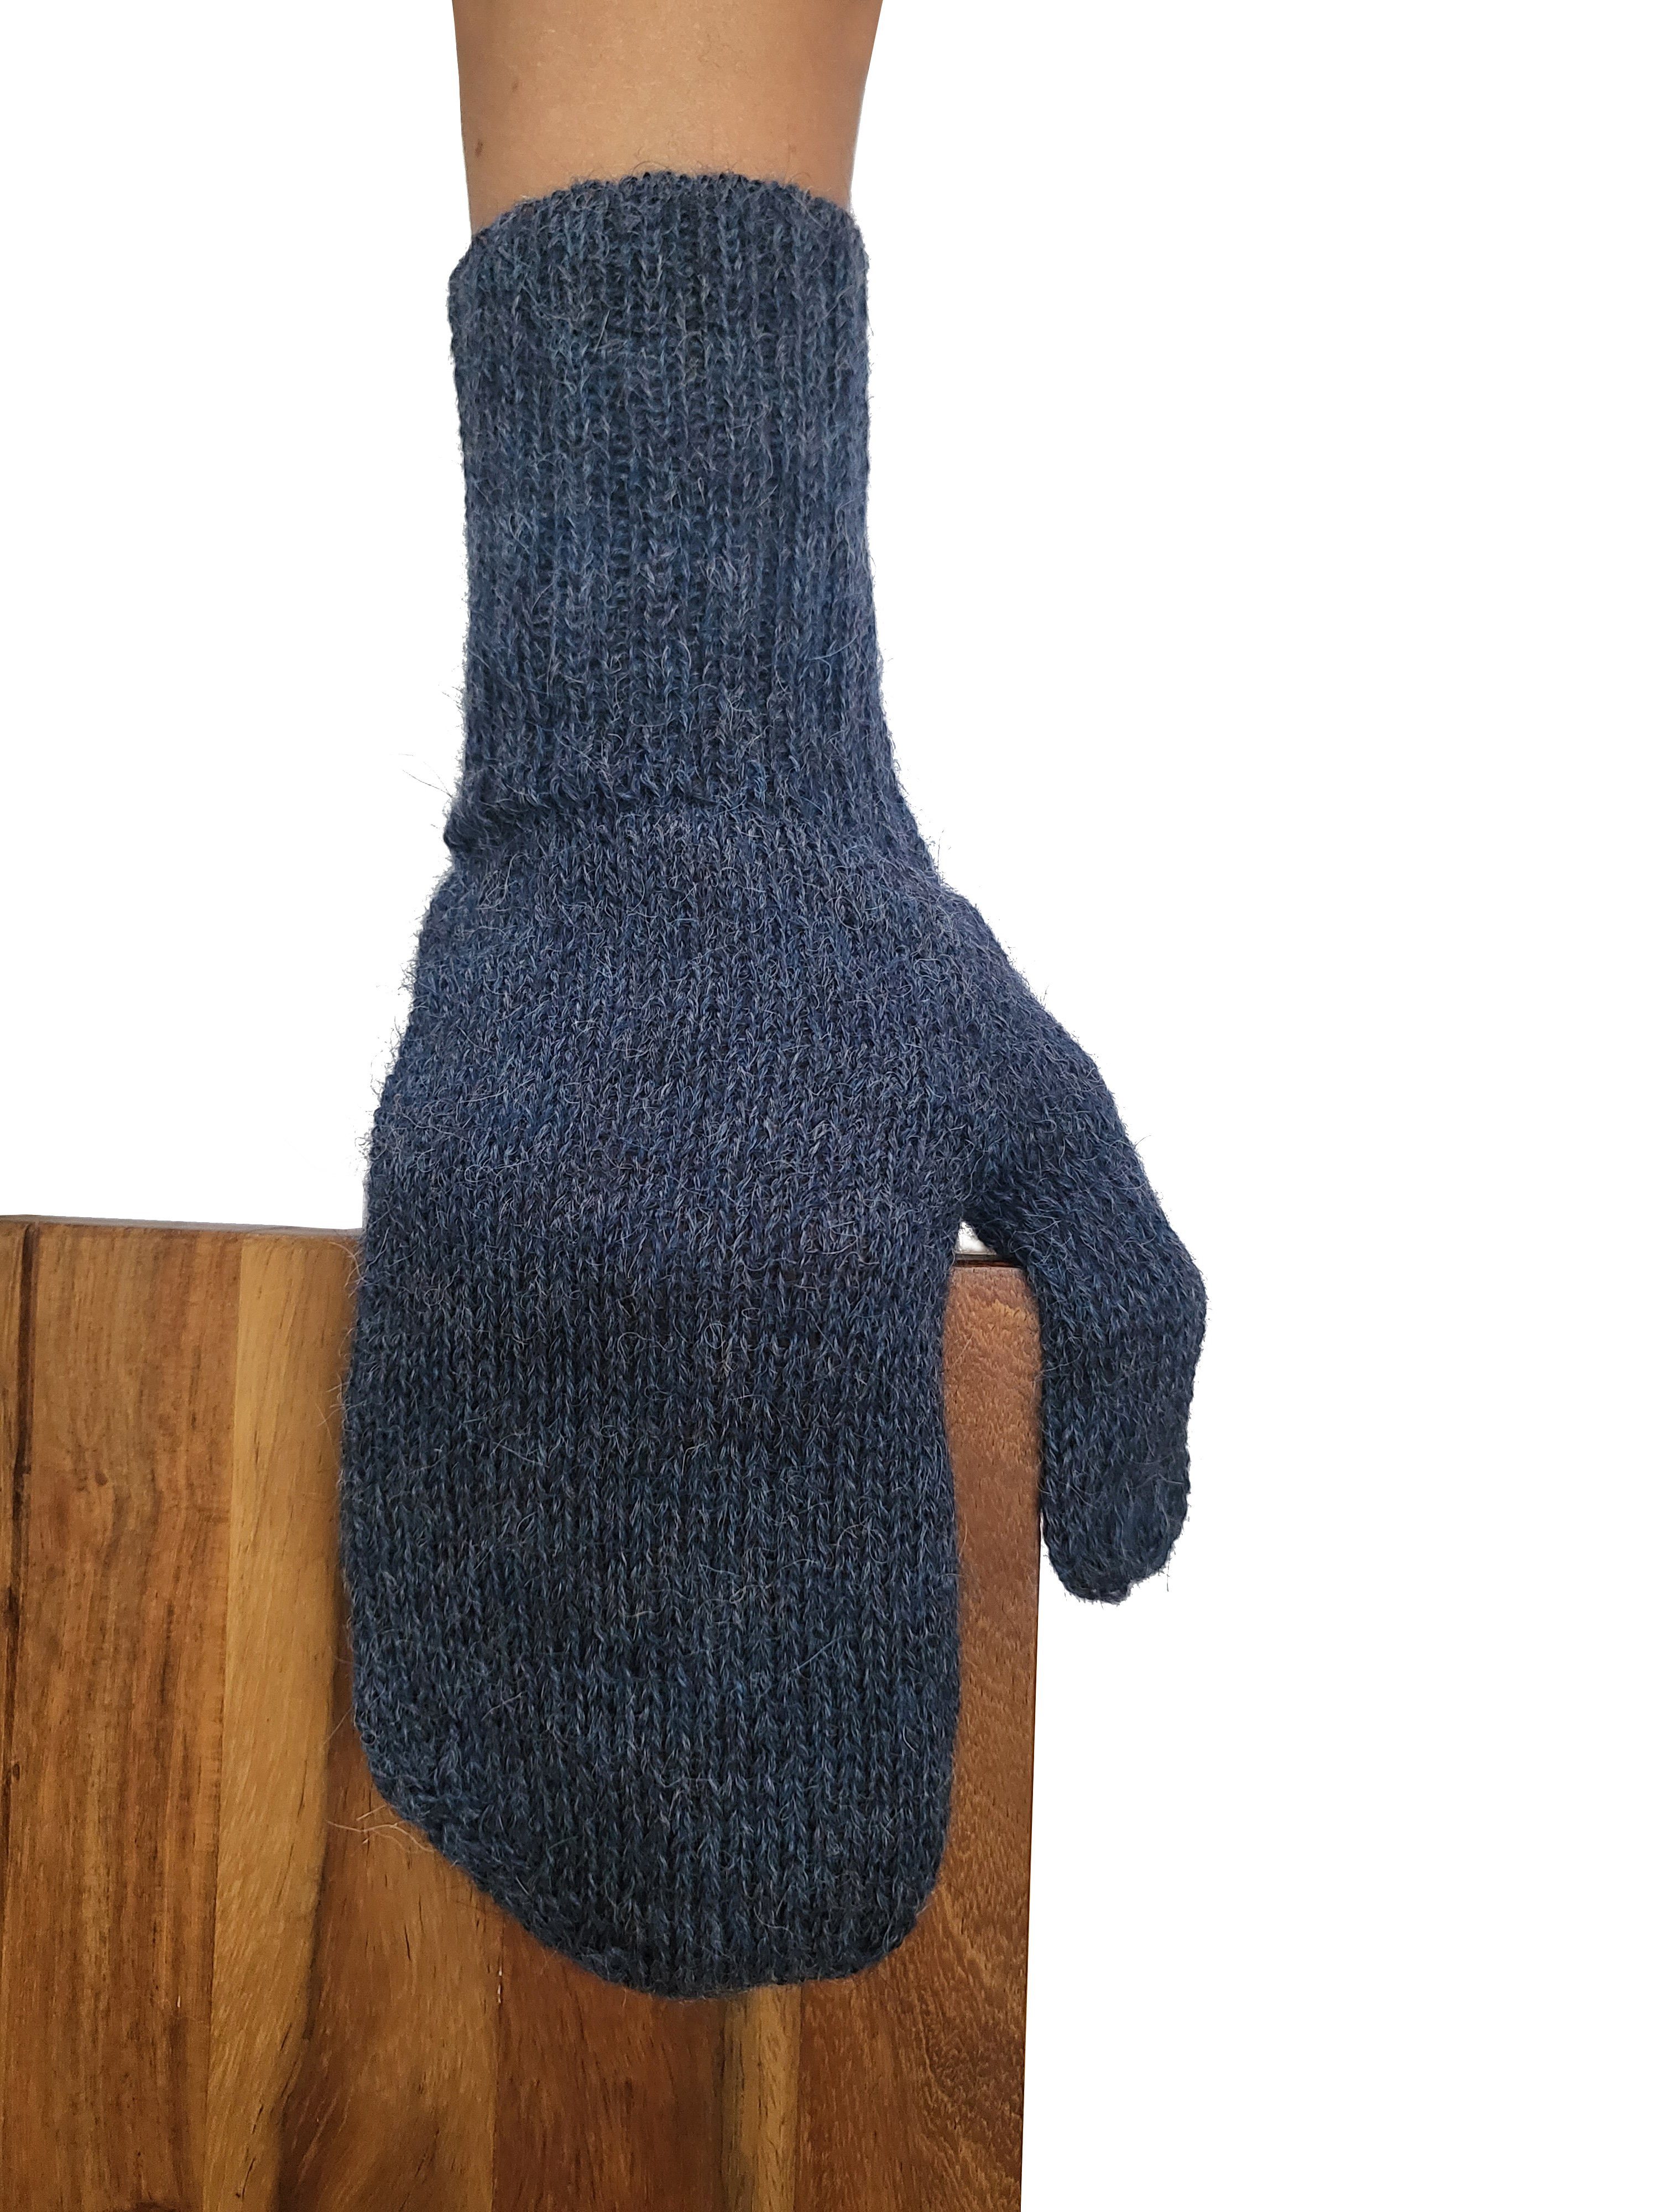 Posh Gear Fäustlinge Alpaka Handschuhe Pugnoguanti Damen Herren aus 100% Alpakawolle dunkel blau